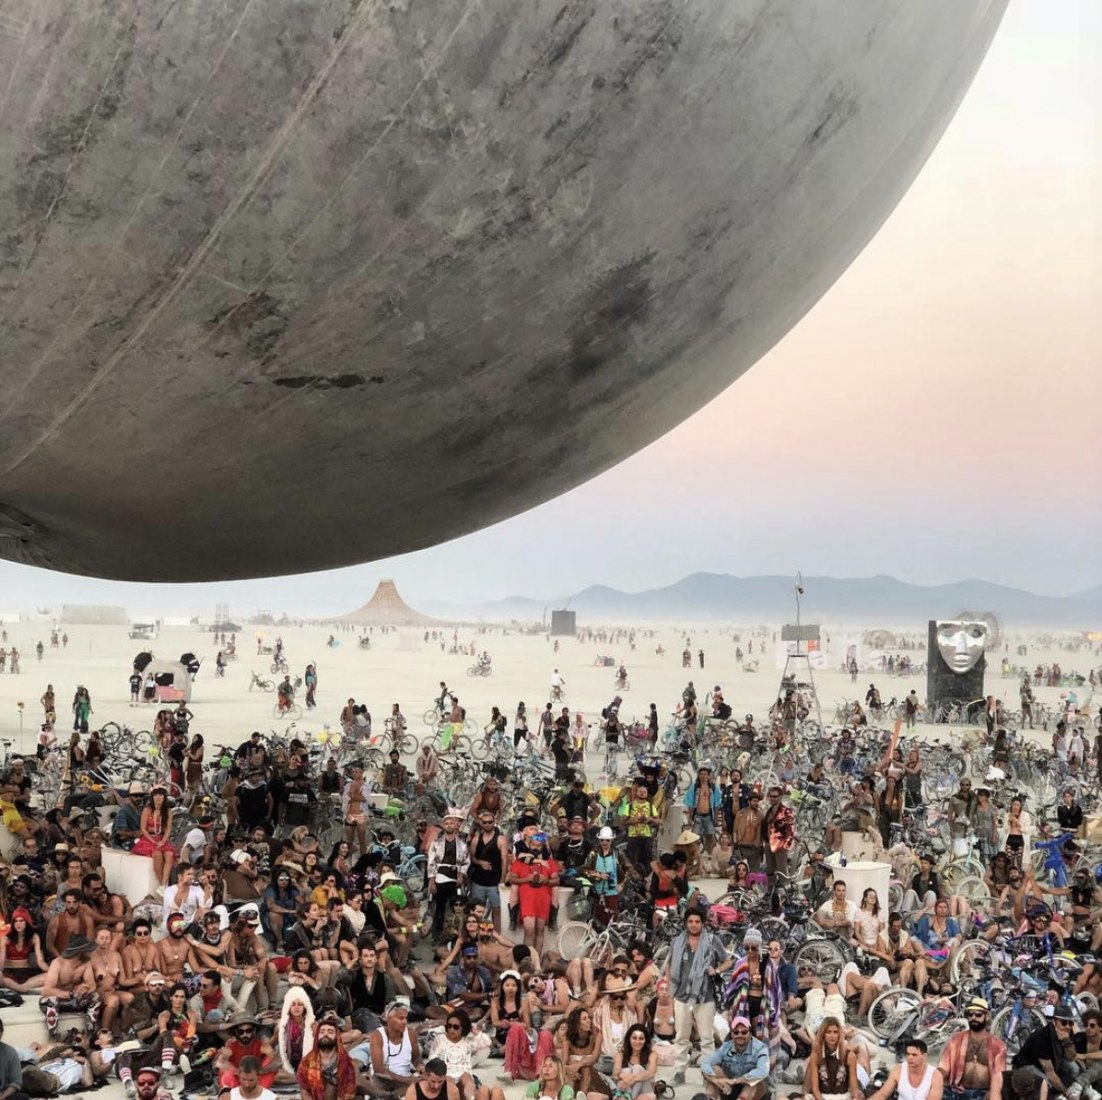 ORB, la gigante esfera reflectante del Burning Man 2018 por BIG en Burning Man 2018. Cortesía de Bjarke Ingels